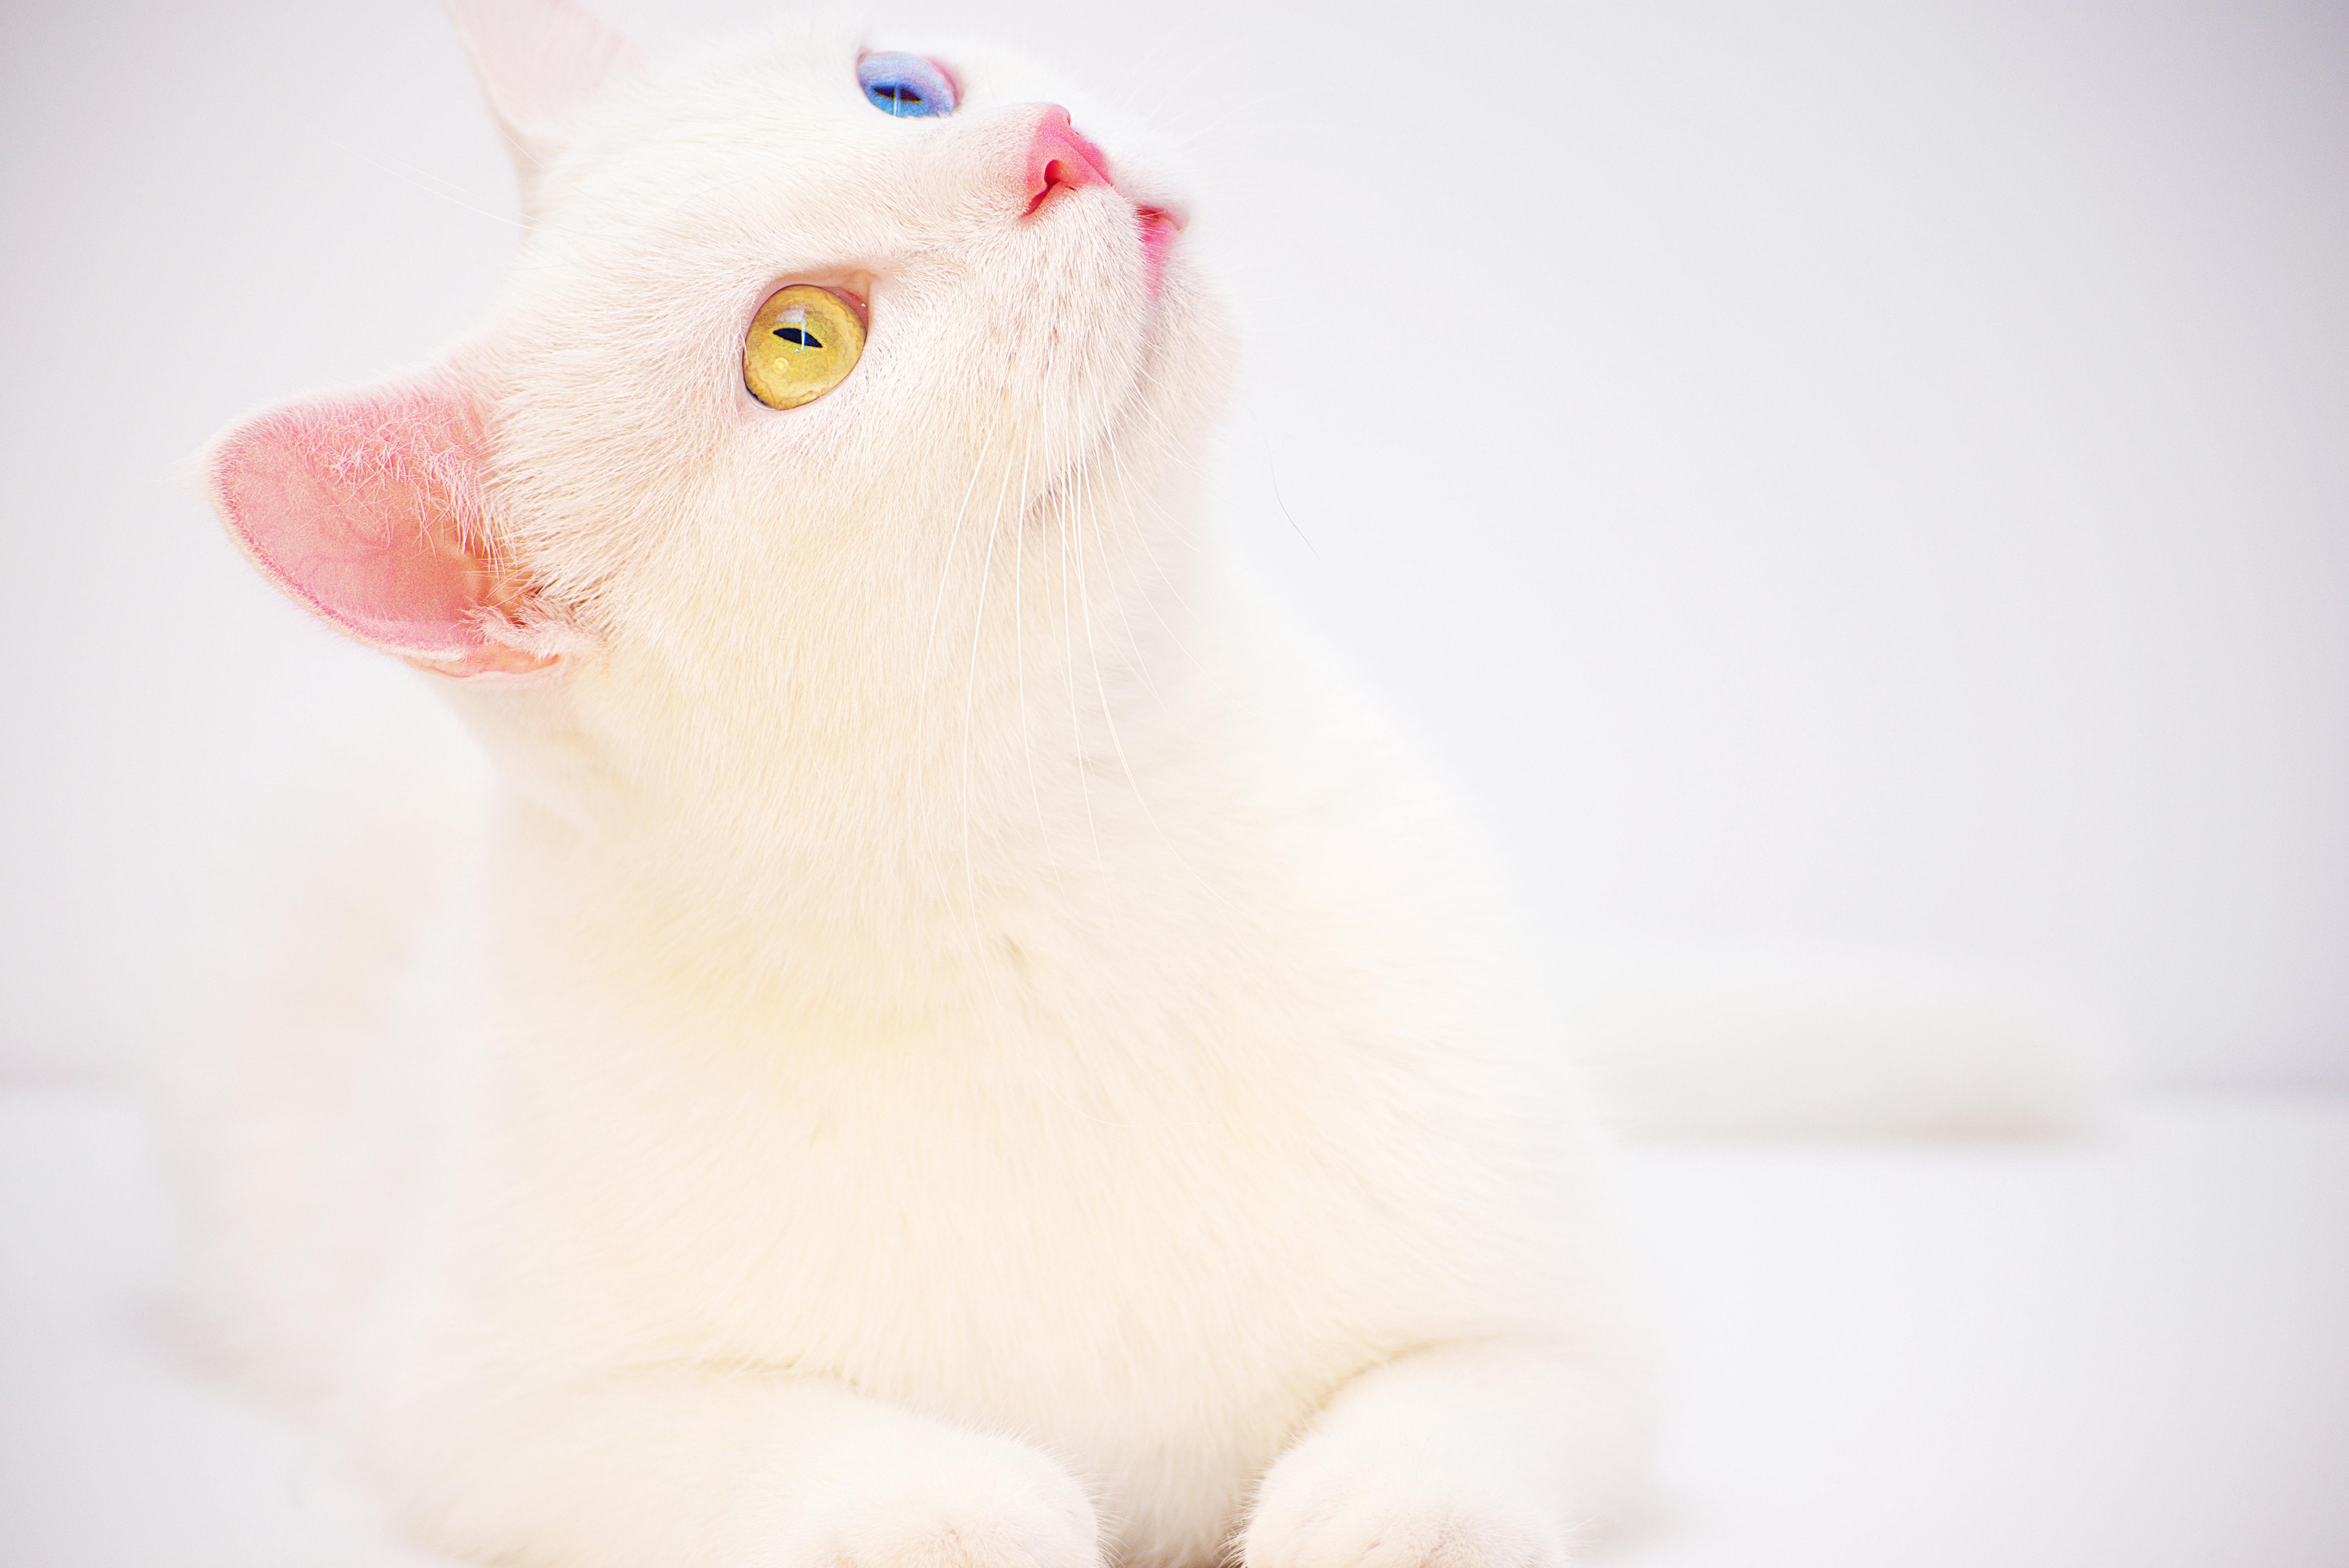 White Cat Kitten Is Standing In Grass Field HD Cute Cat Wallpapers  HD  Wallpapers  ID 62968